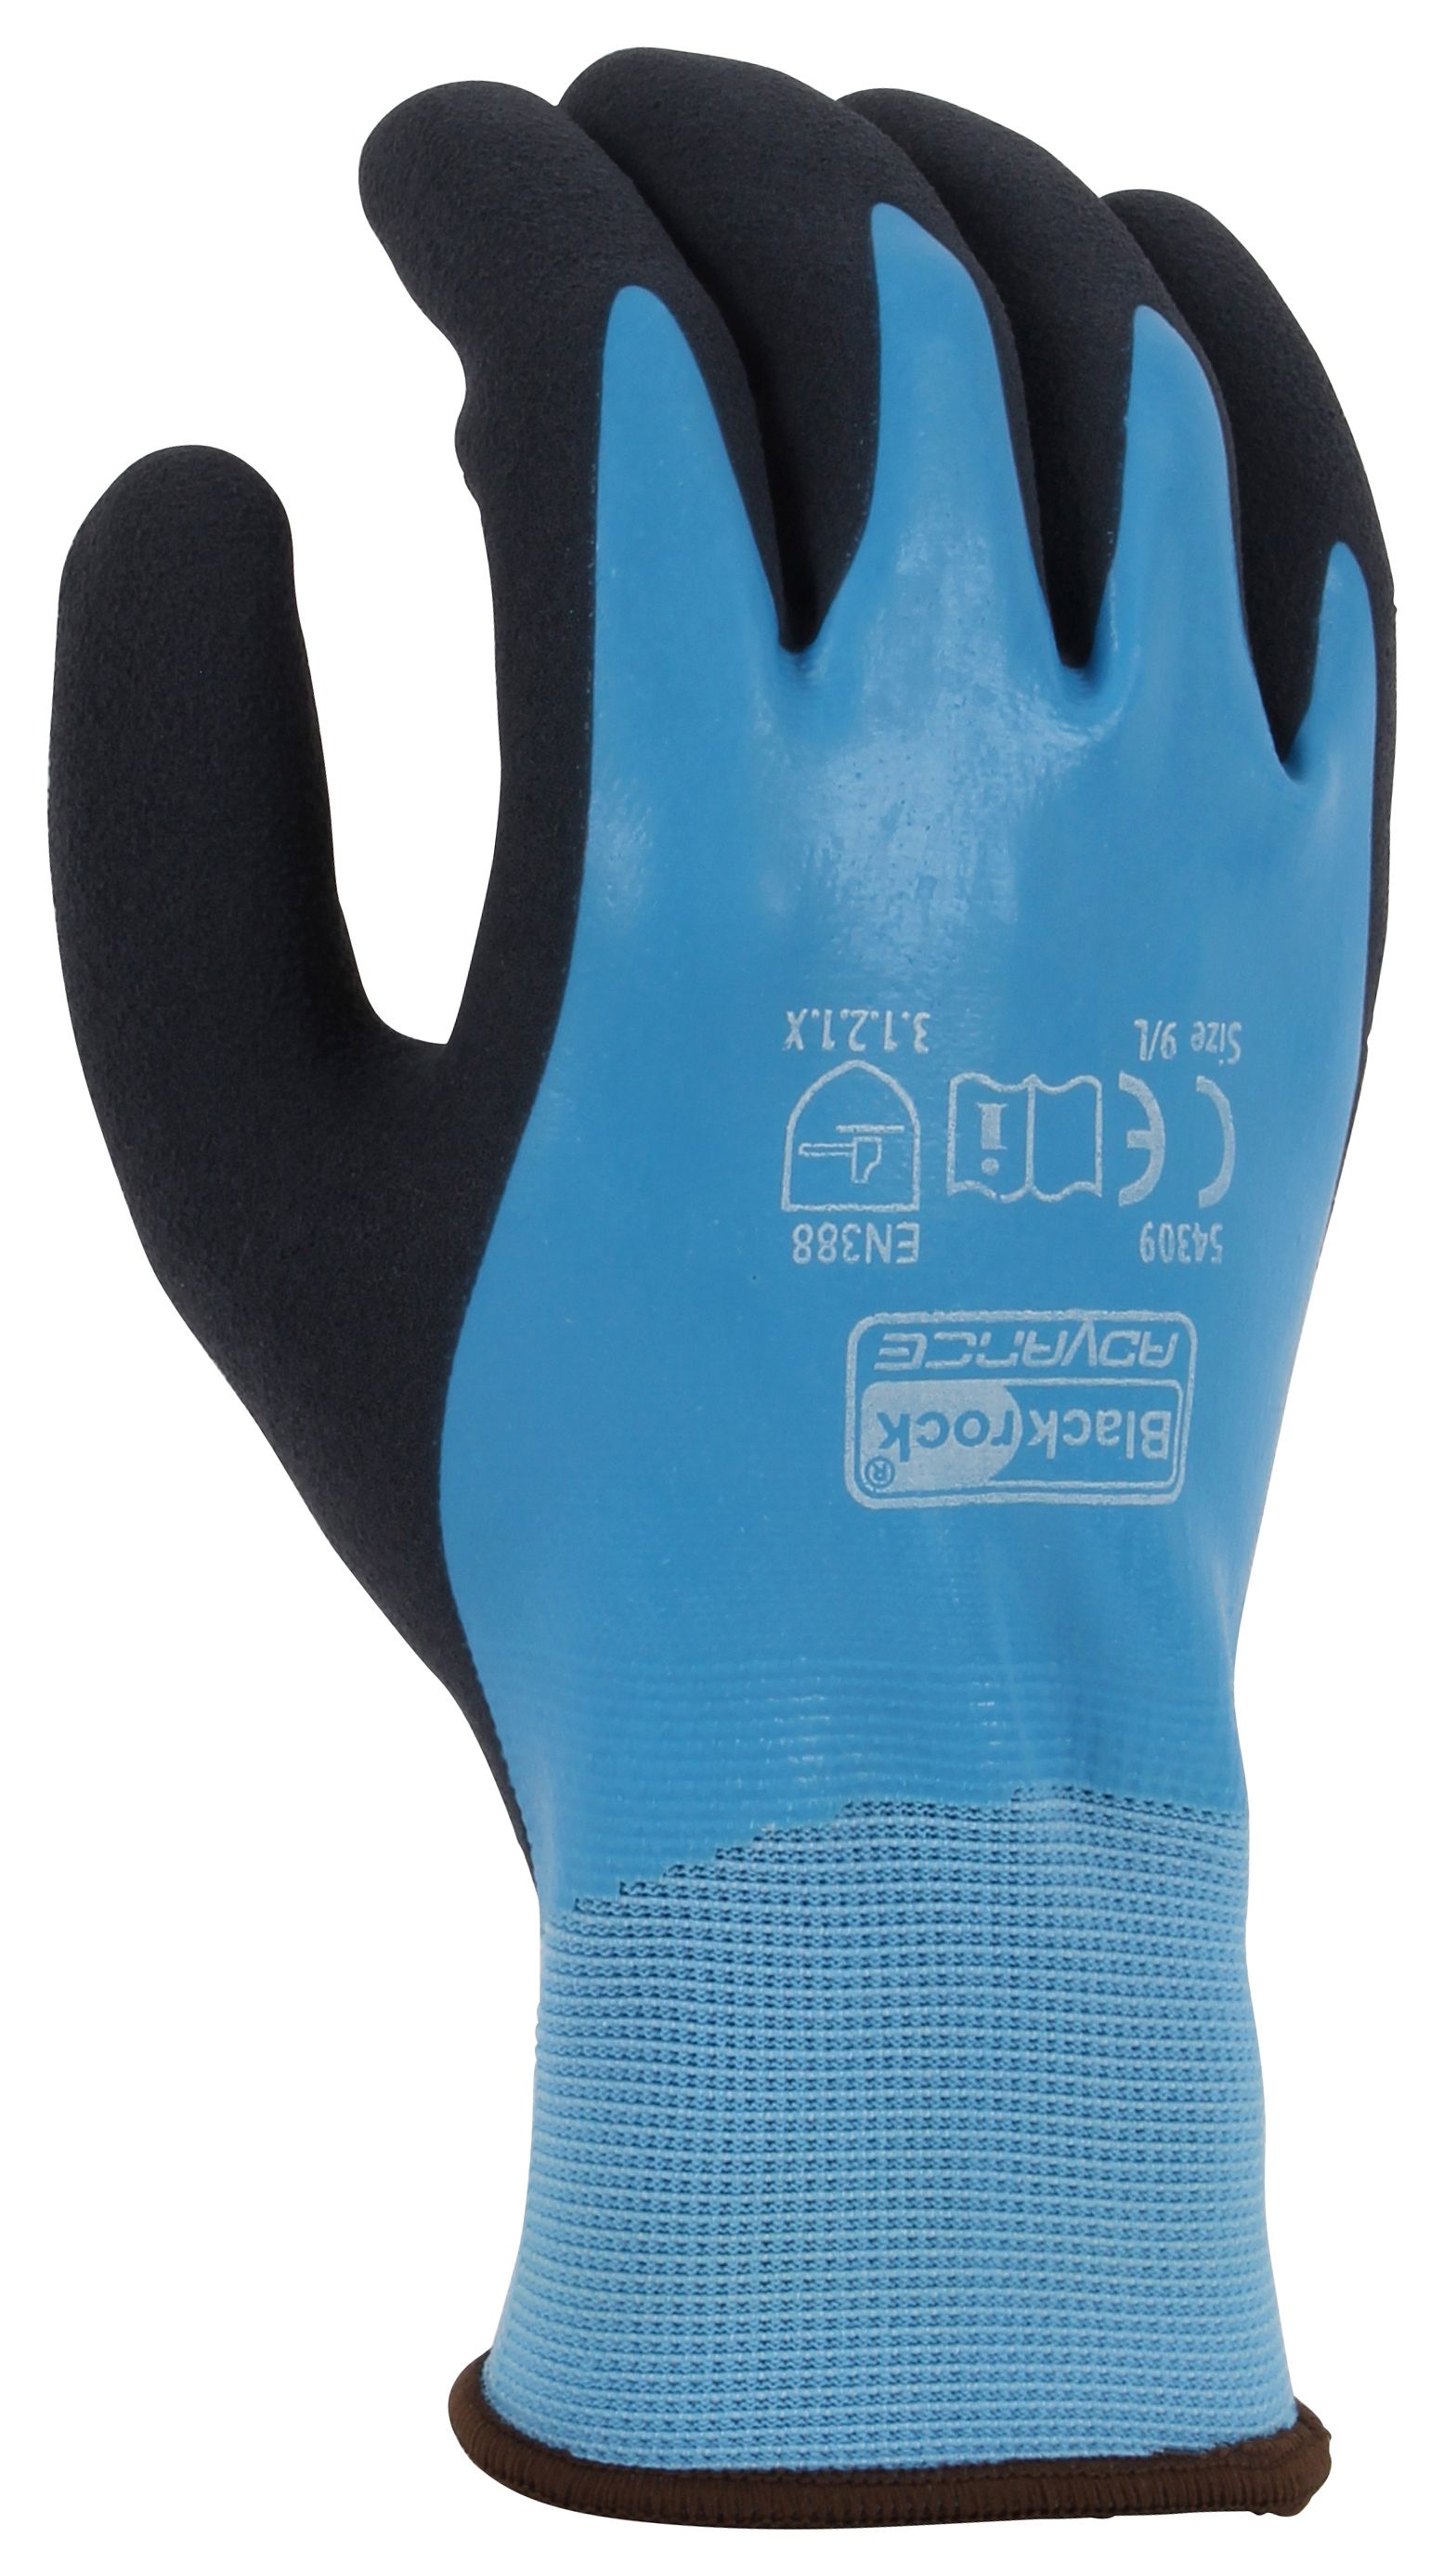 Blackrock Watertite Waterproof Blue Gloves - Size XL/10